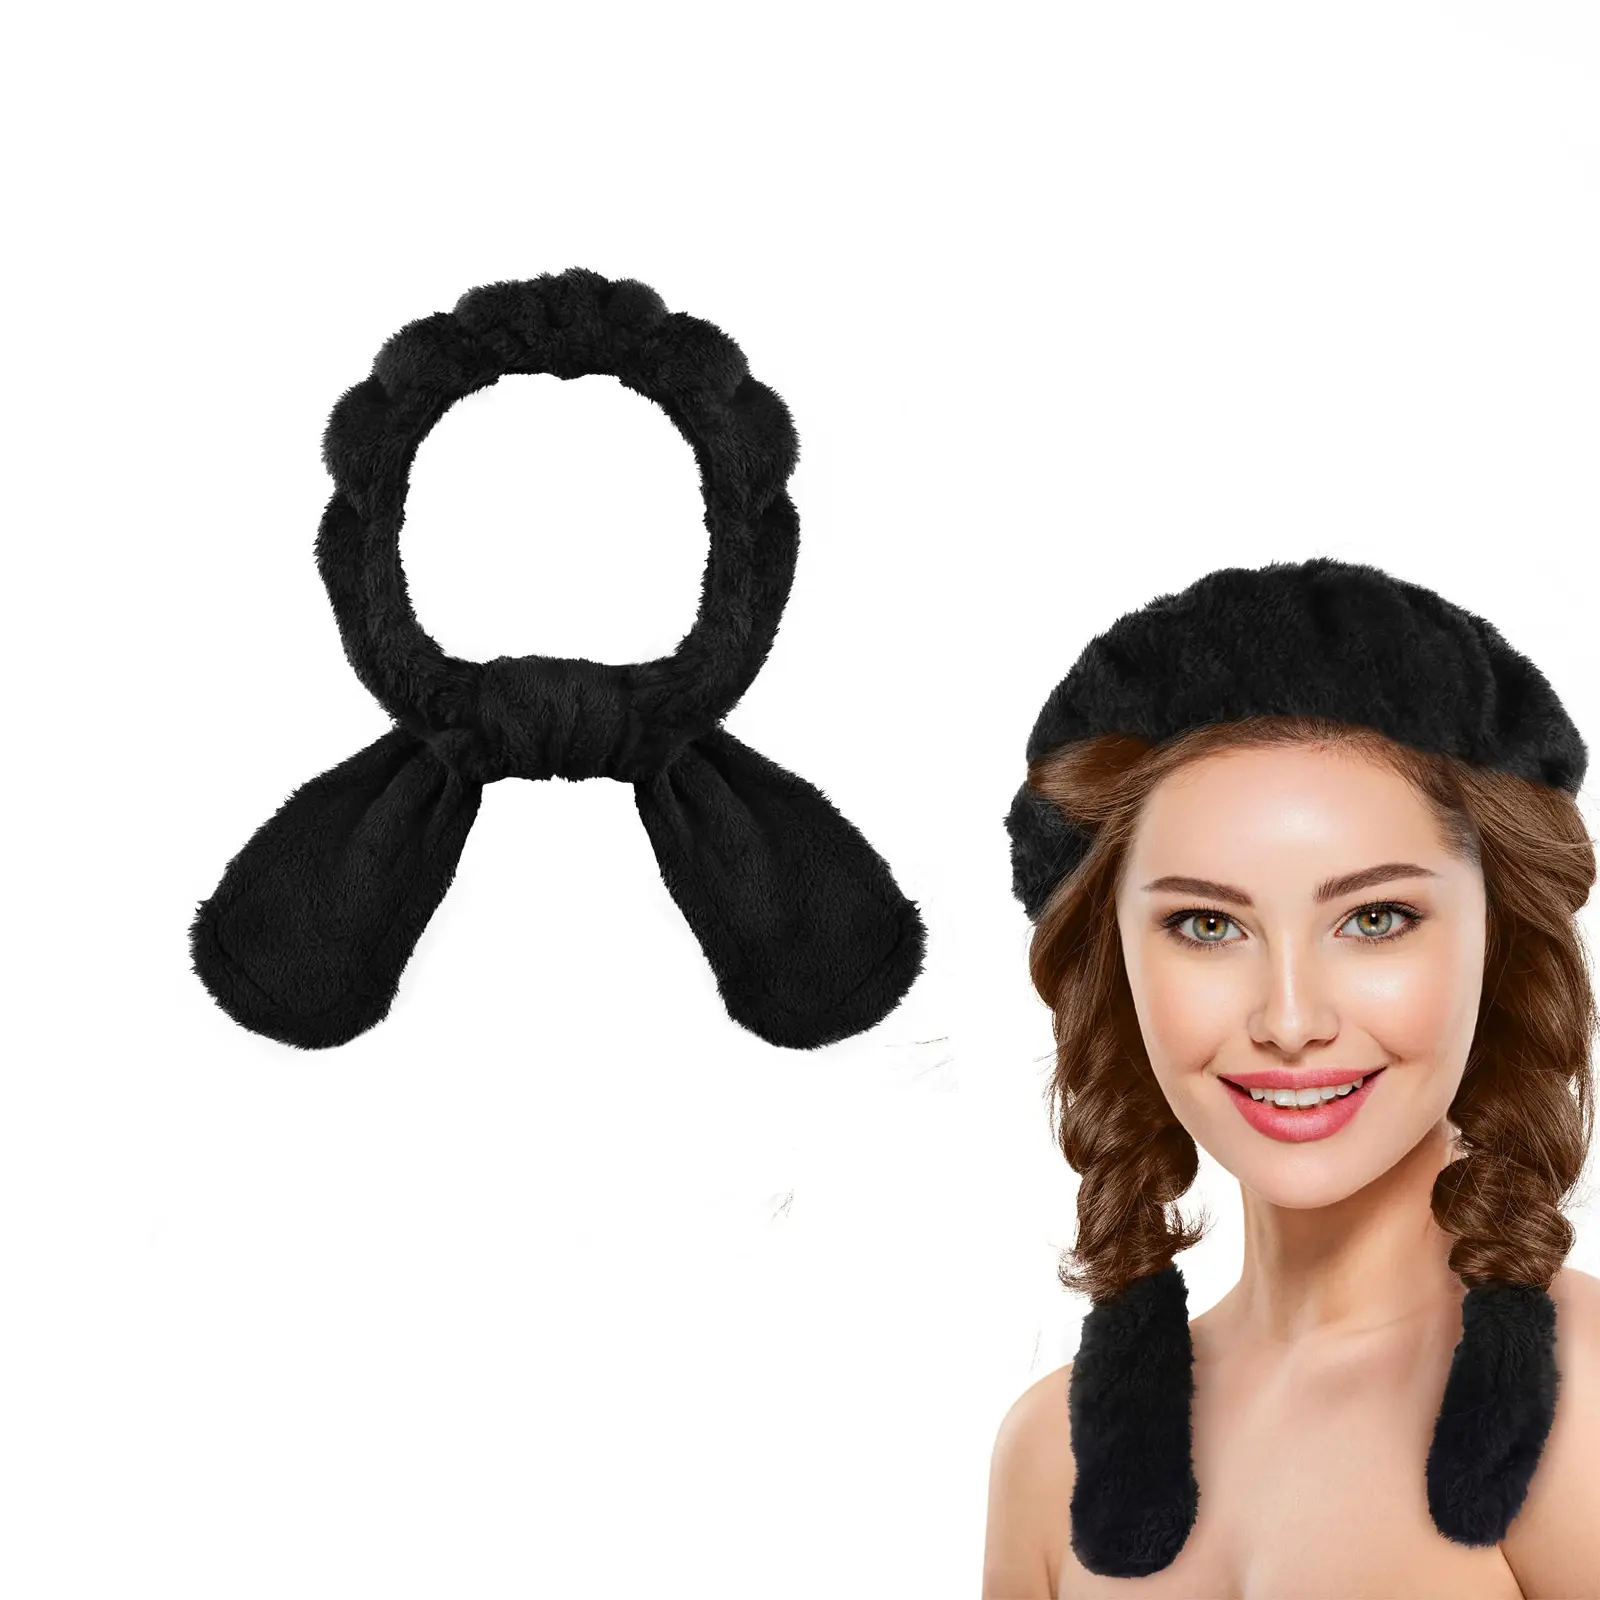 Mới không có con lăn nhiệt ledora tùy chỉnh heatless uốn thanh Headband linh hoạt sợi nhỏ heatless Headband tóc Curler nhung hairband